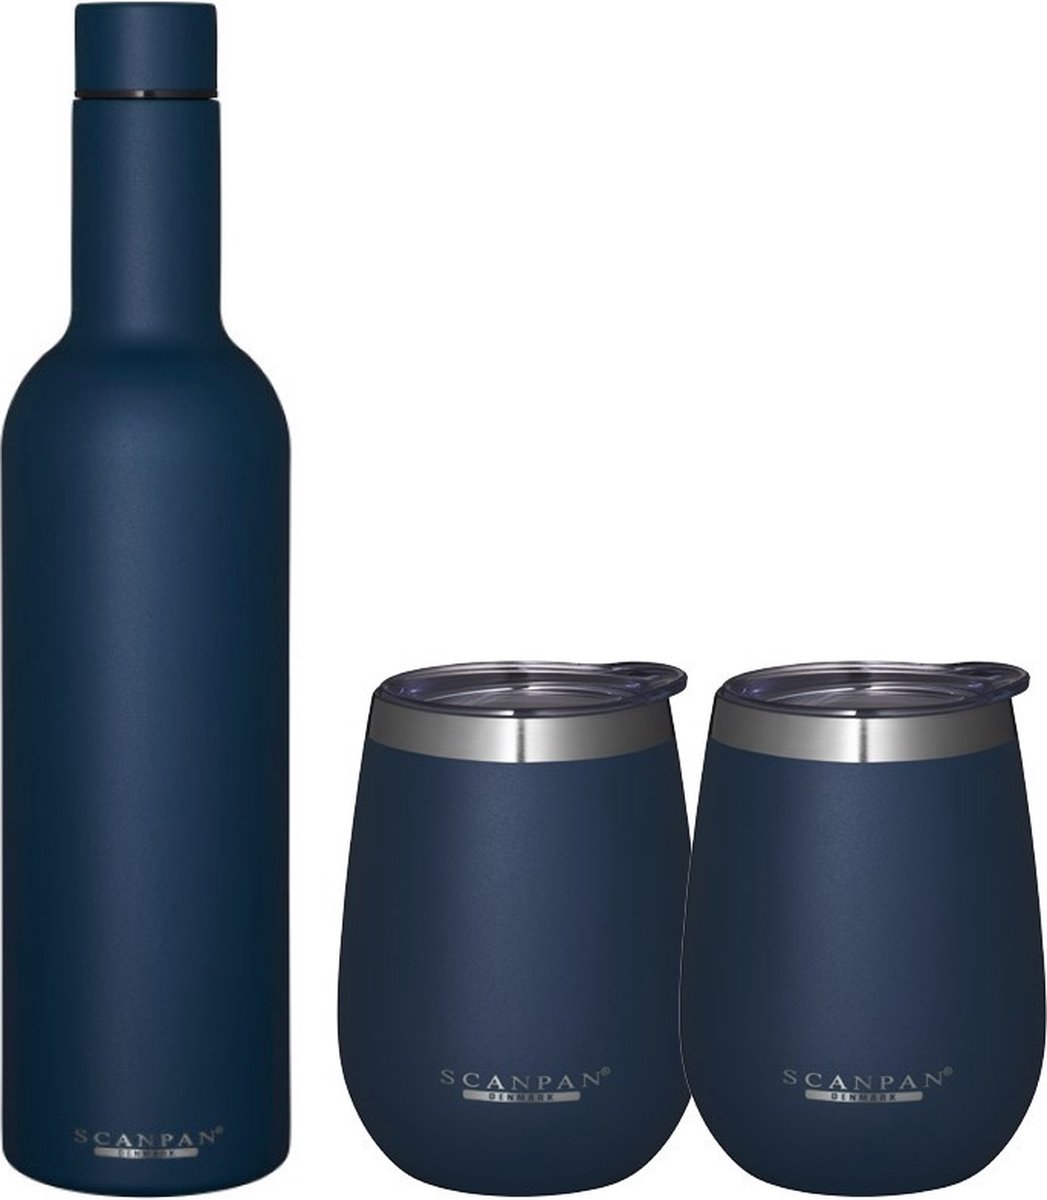 Scanpan - Cadeauset Wijnfles + 2 bekers 2GO Oxfort Blue - Dubbelwandige Drinkfles + 2 Dubbelwandige Bekers